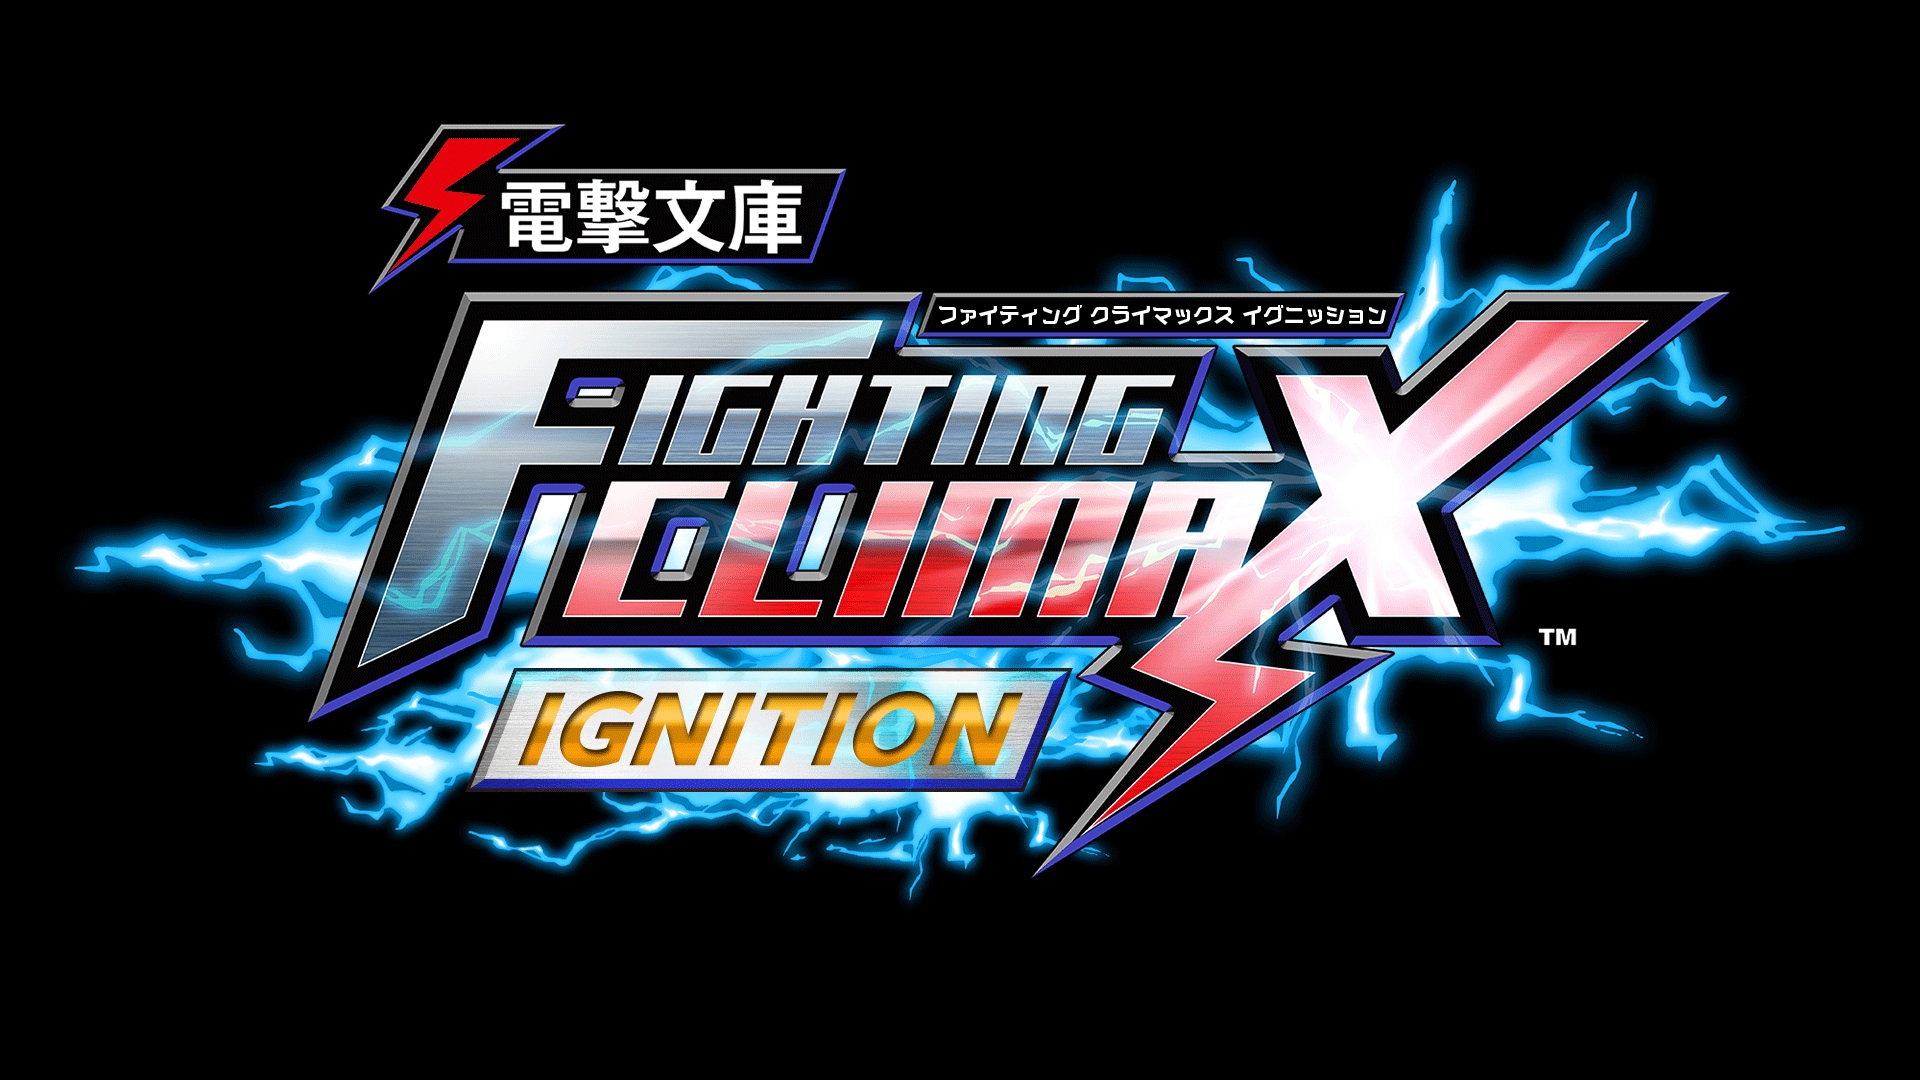 2d対戦格闘ゲーム 電撃文庫 Fighting Climax Ignition 最終ロケテストを都内3店舗で開催決定 株式会社セガのプレスリリース